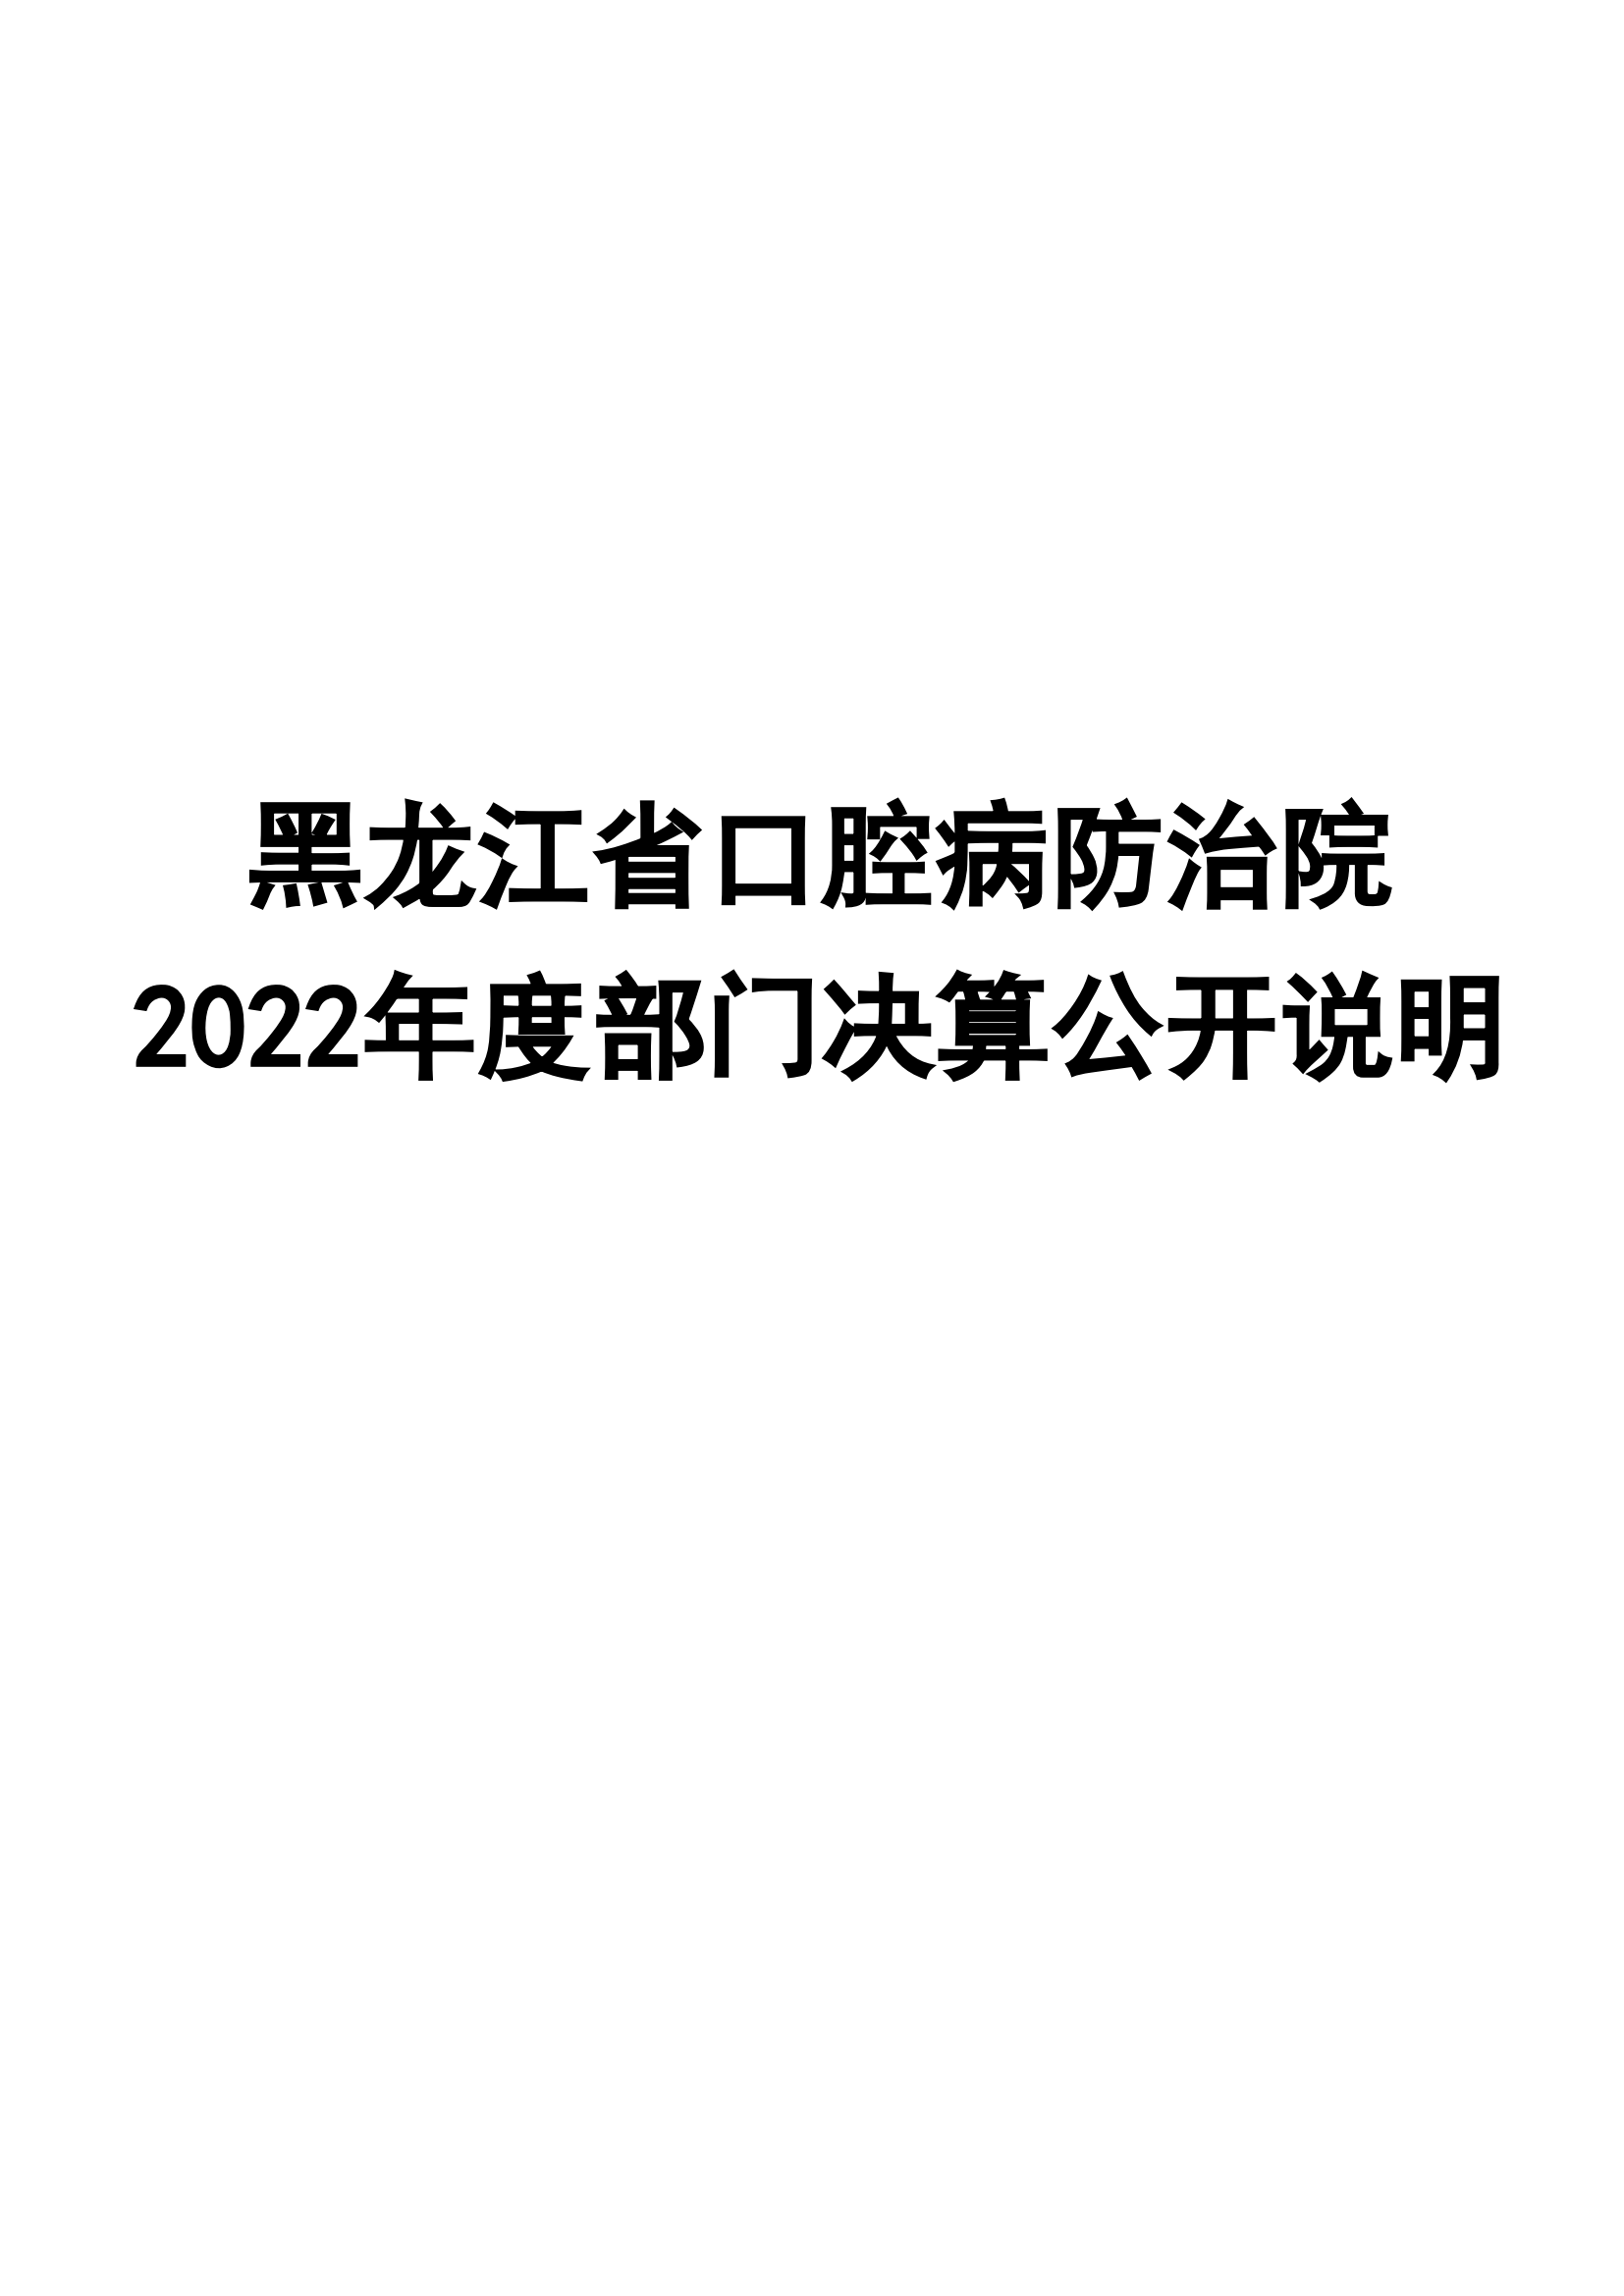 2022年黑龙江省口腔病防治院部门决算_00.png